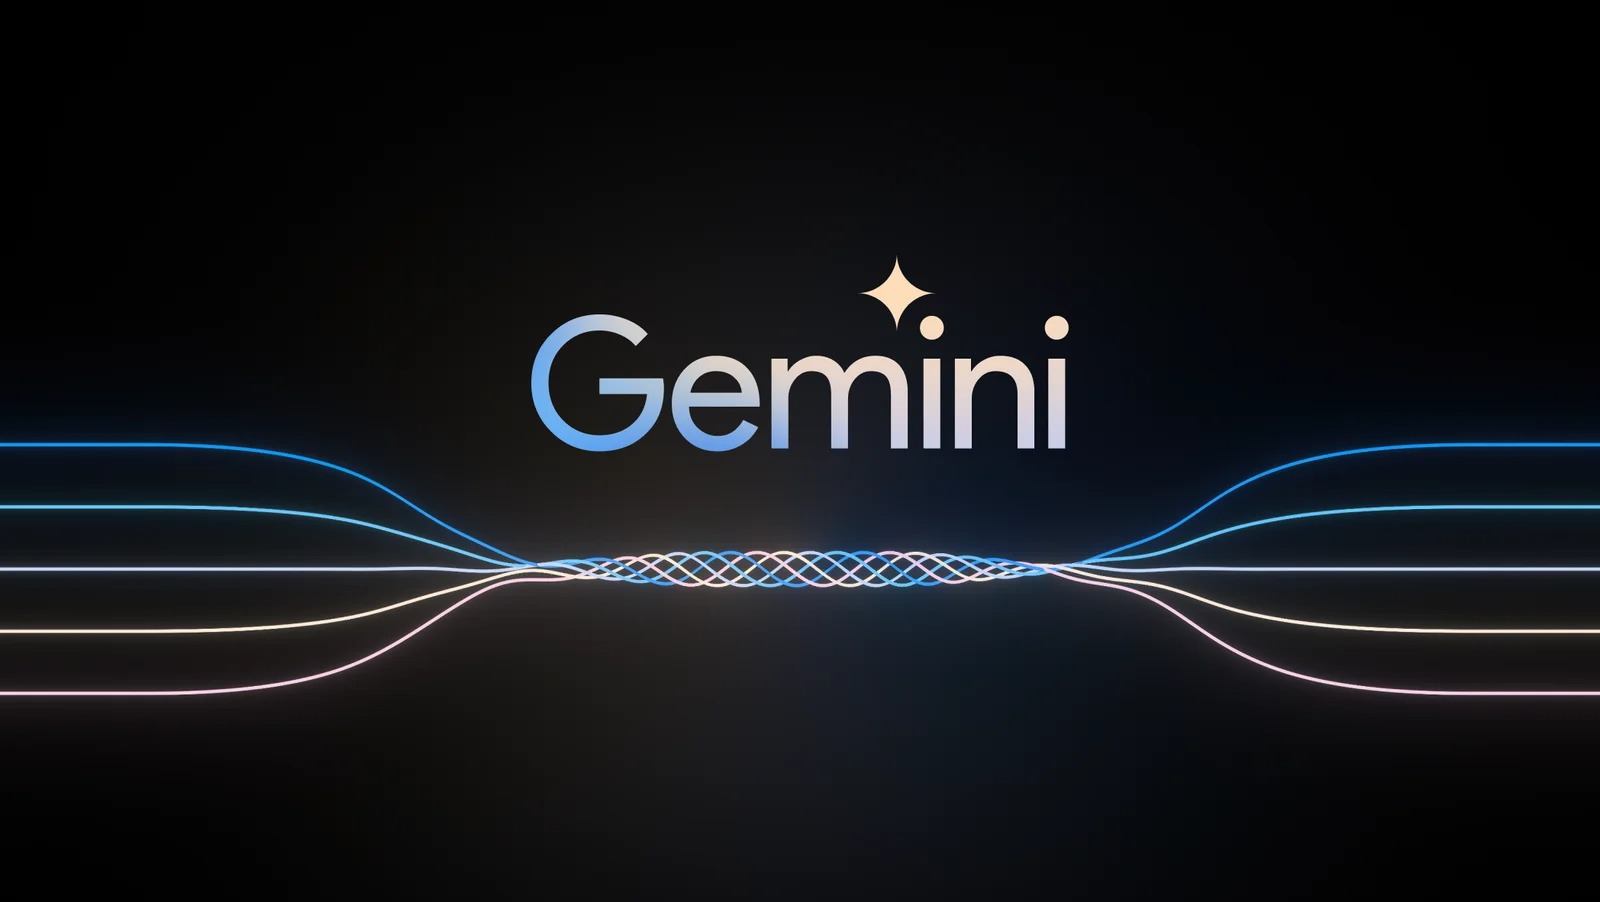 Google Perkenalkan Gemini, Model AI Terbesar dan Paling Mumpuni Pengganti Bard